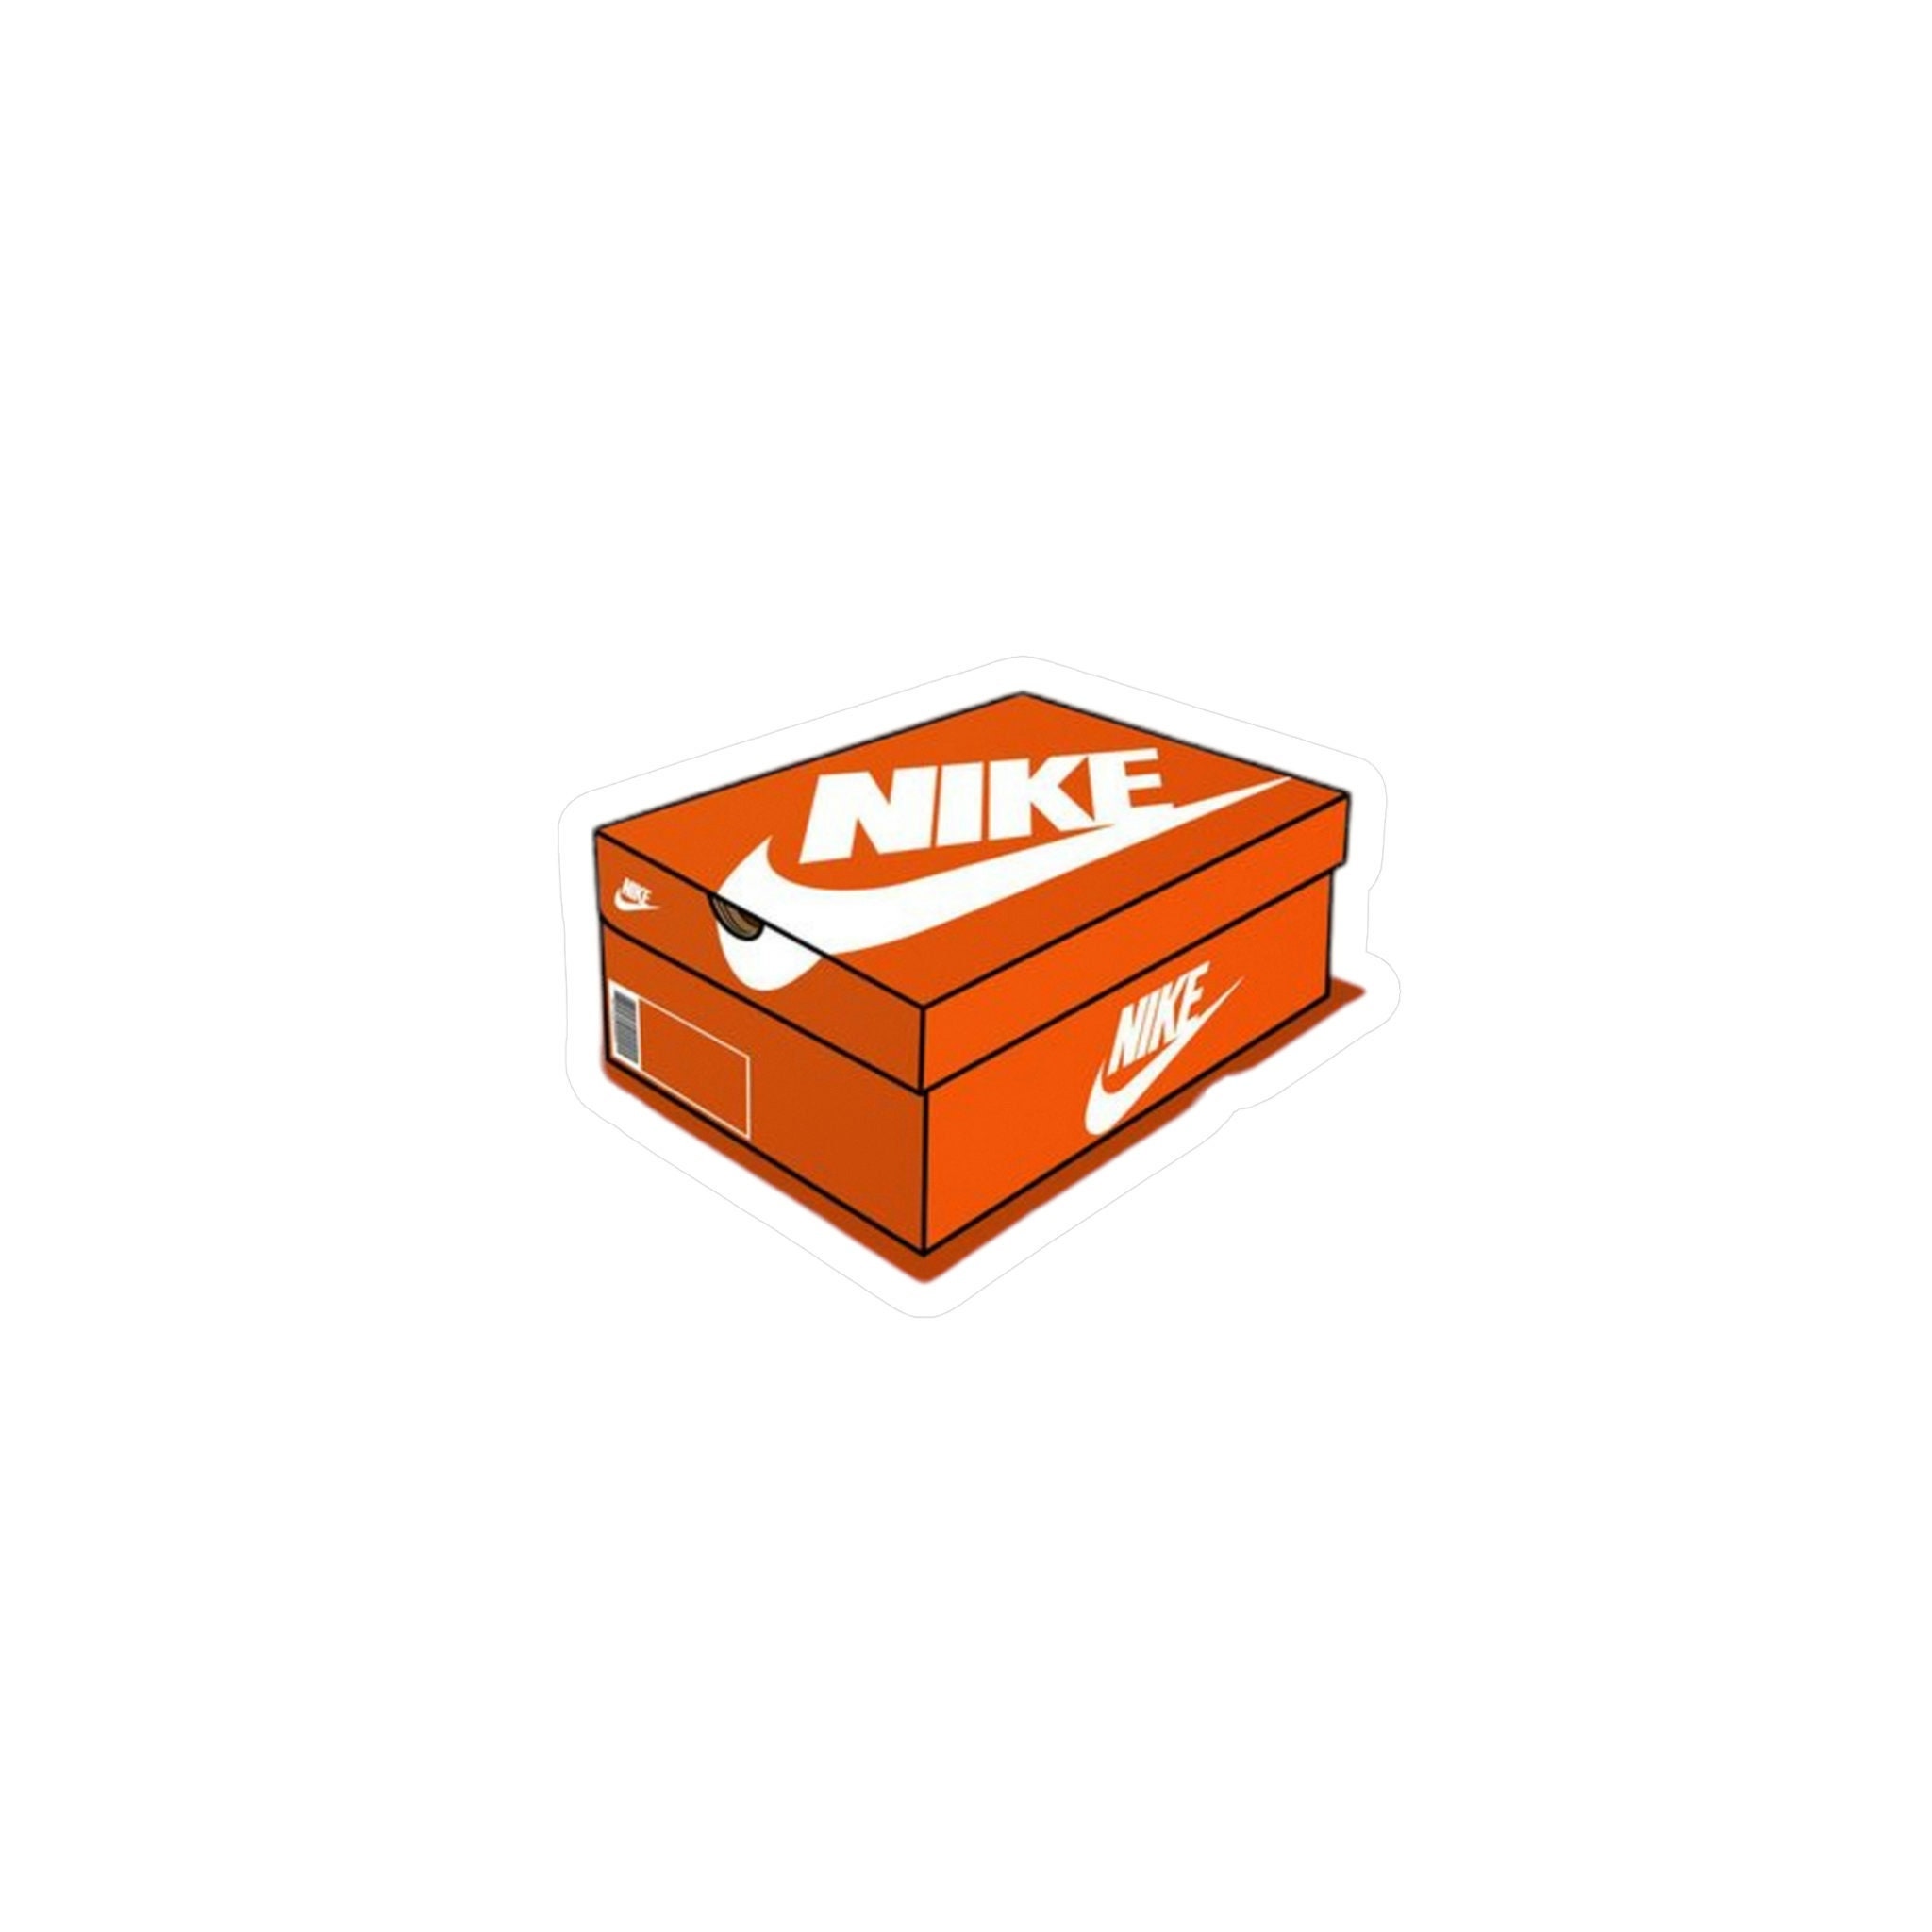 Nike Shoebox Etsy